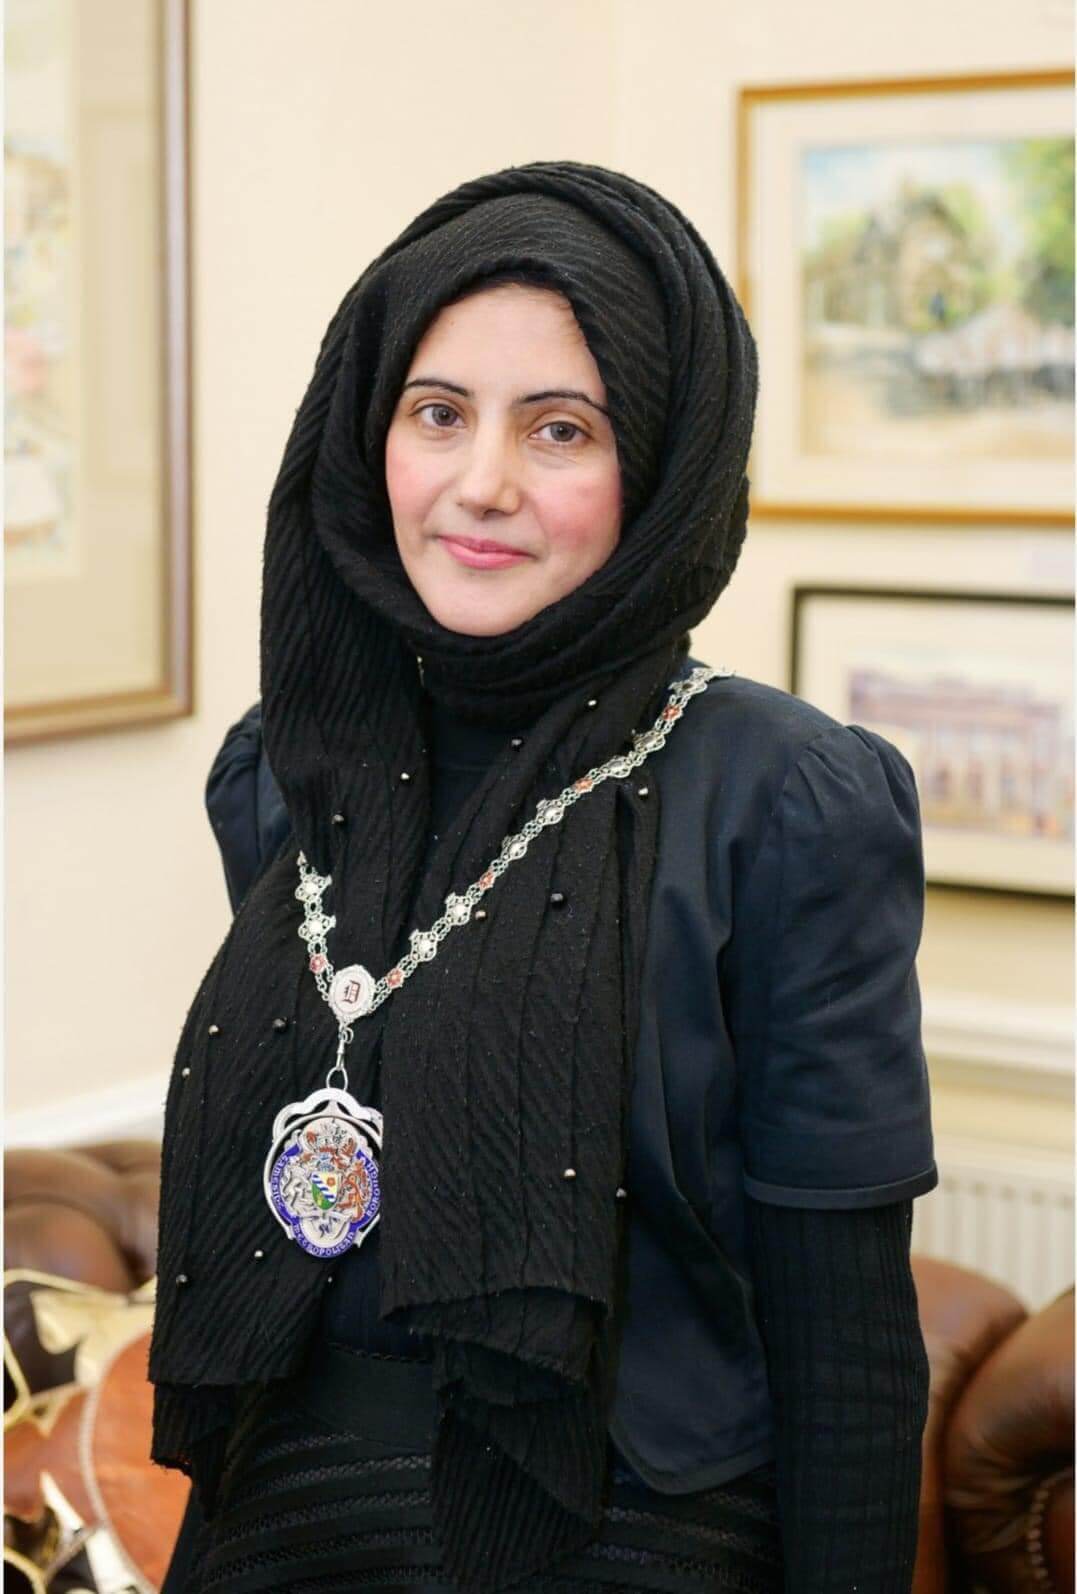 انتخاب أول امرأة مسلمة لمنصب نائب عمدة في بريطانيا